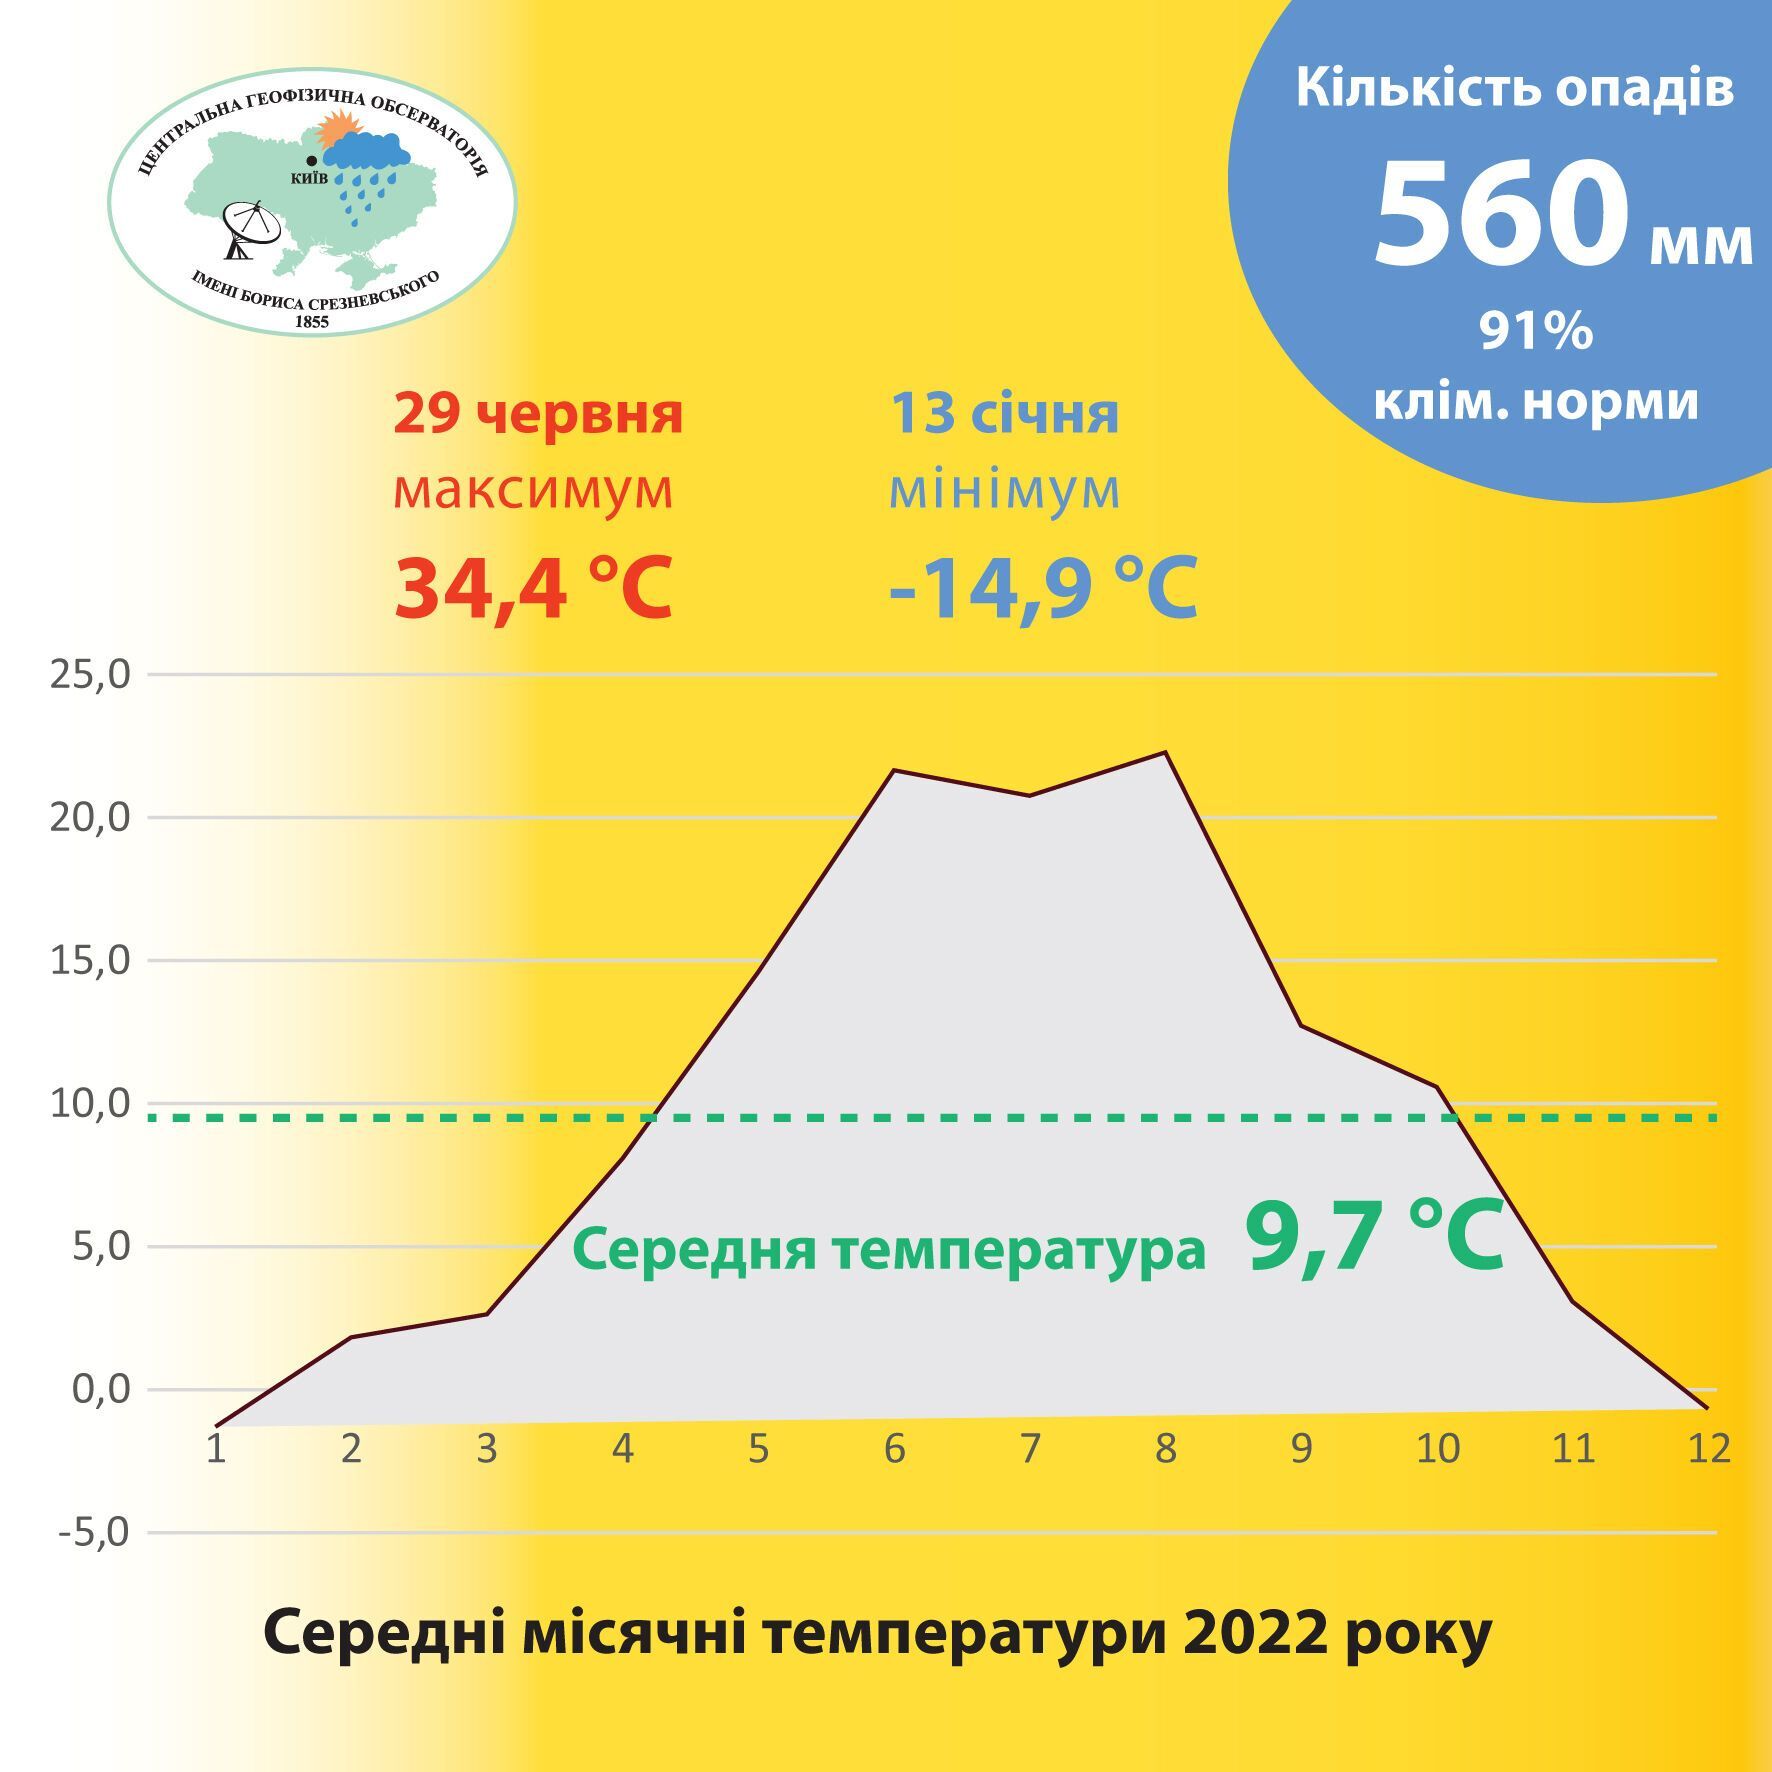 2022 год стал одним из самых теплых за всю историю: только в Киеве было установлено 15 температурных рекордов